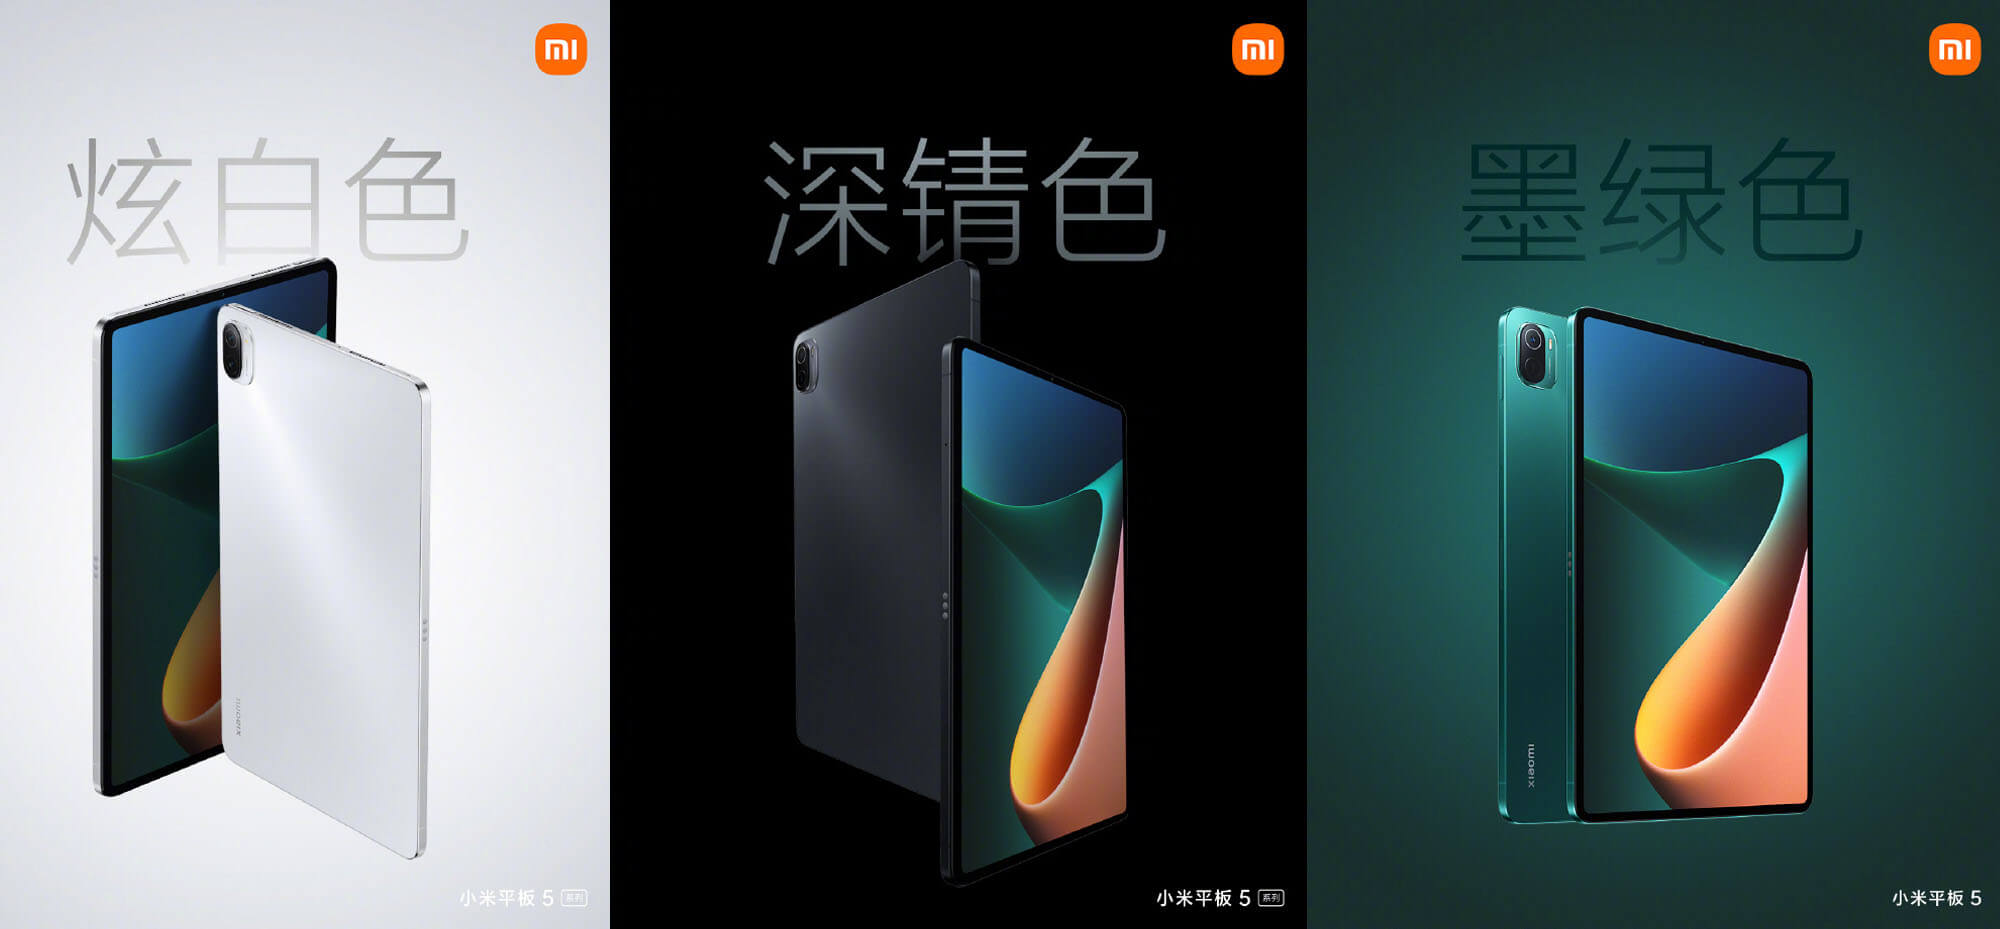 タブレット市場激震。XiaomiがMi Pad 5、Mi Pad 5 Proをリリース！極上スペックでお値段3万円台～